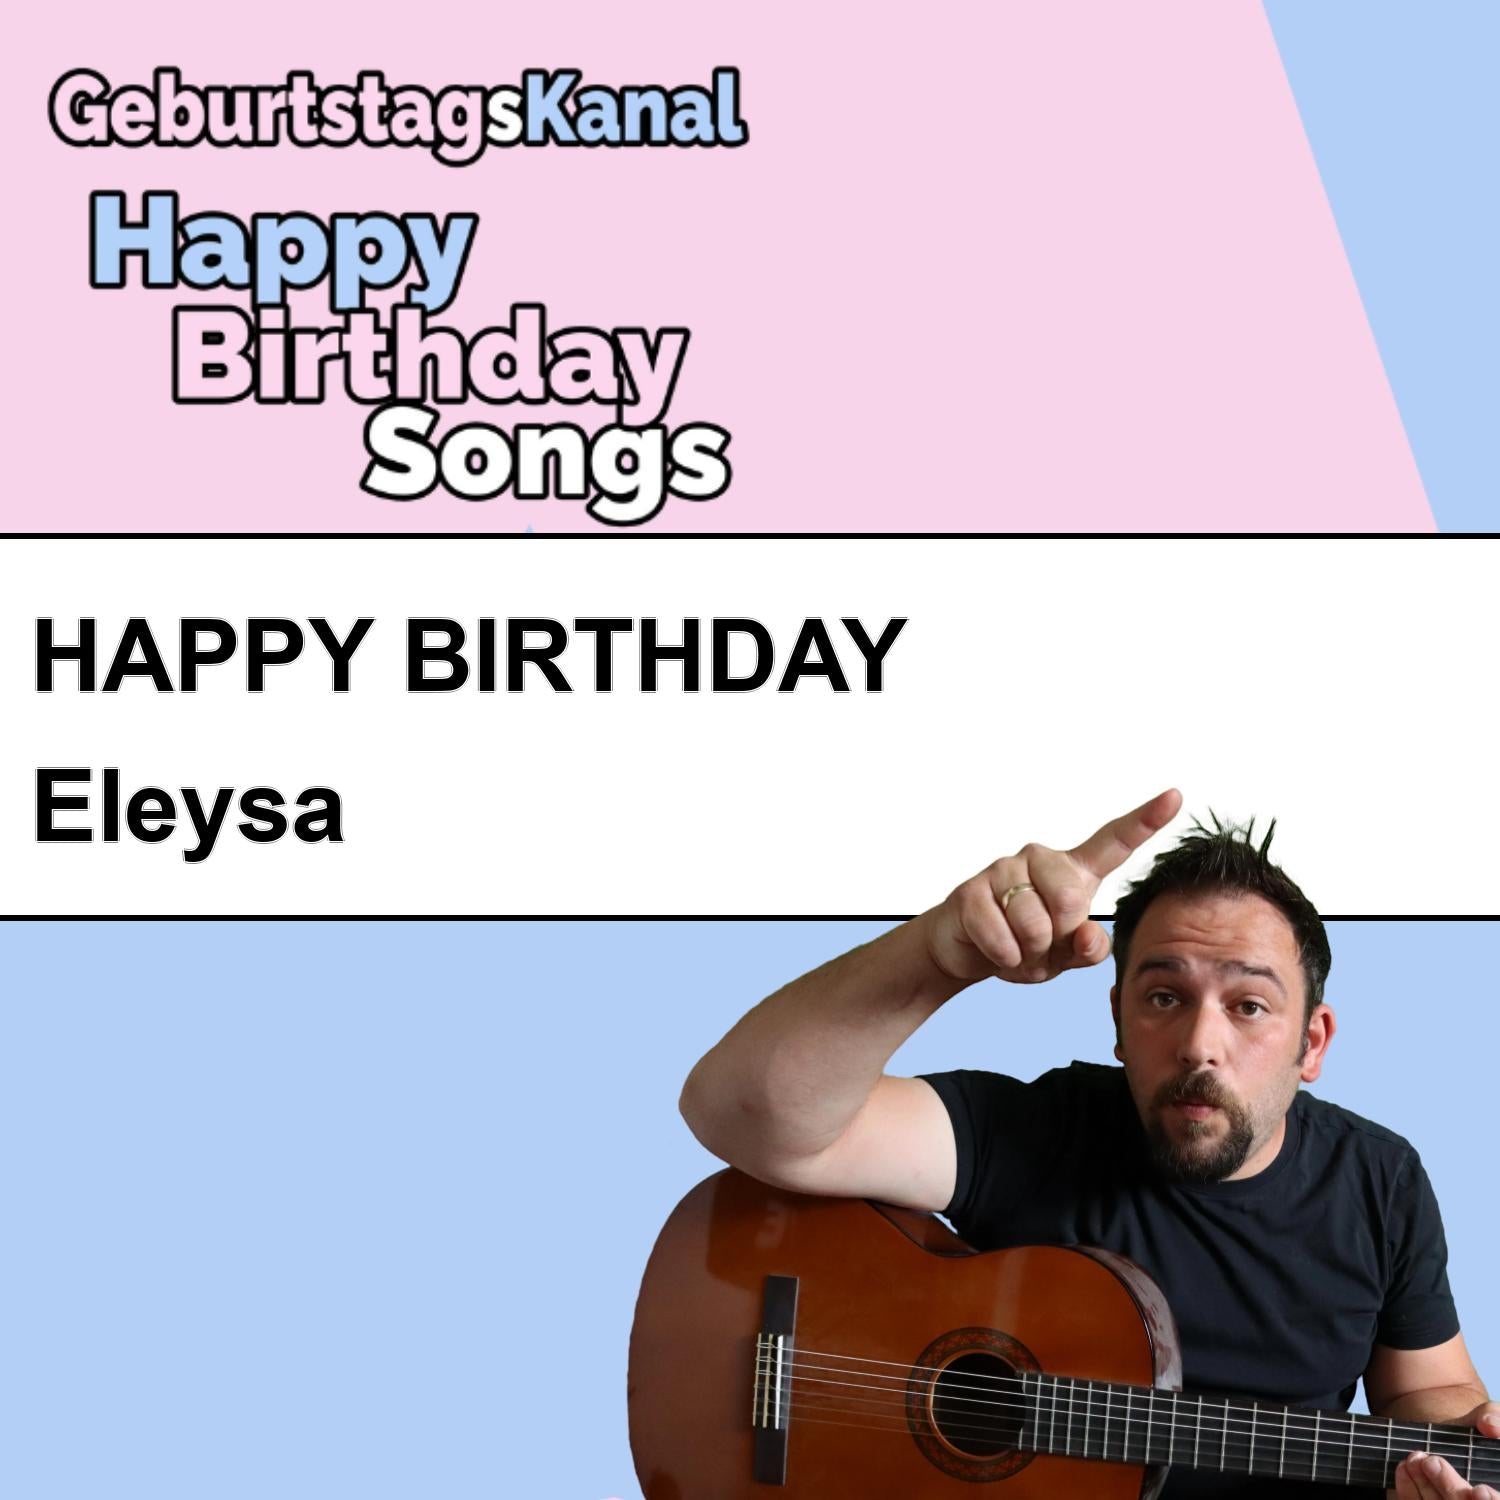 Produktbild Happy Birthday to you Eleysa mit Wunschgrußbotschaft